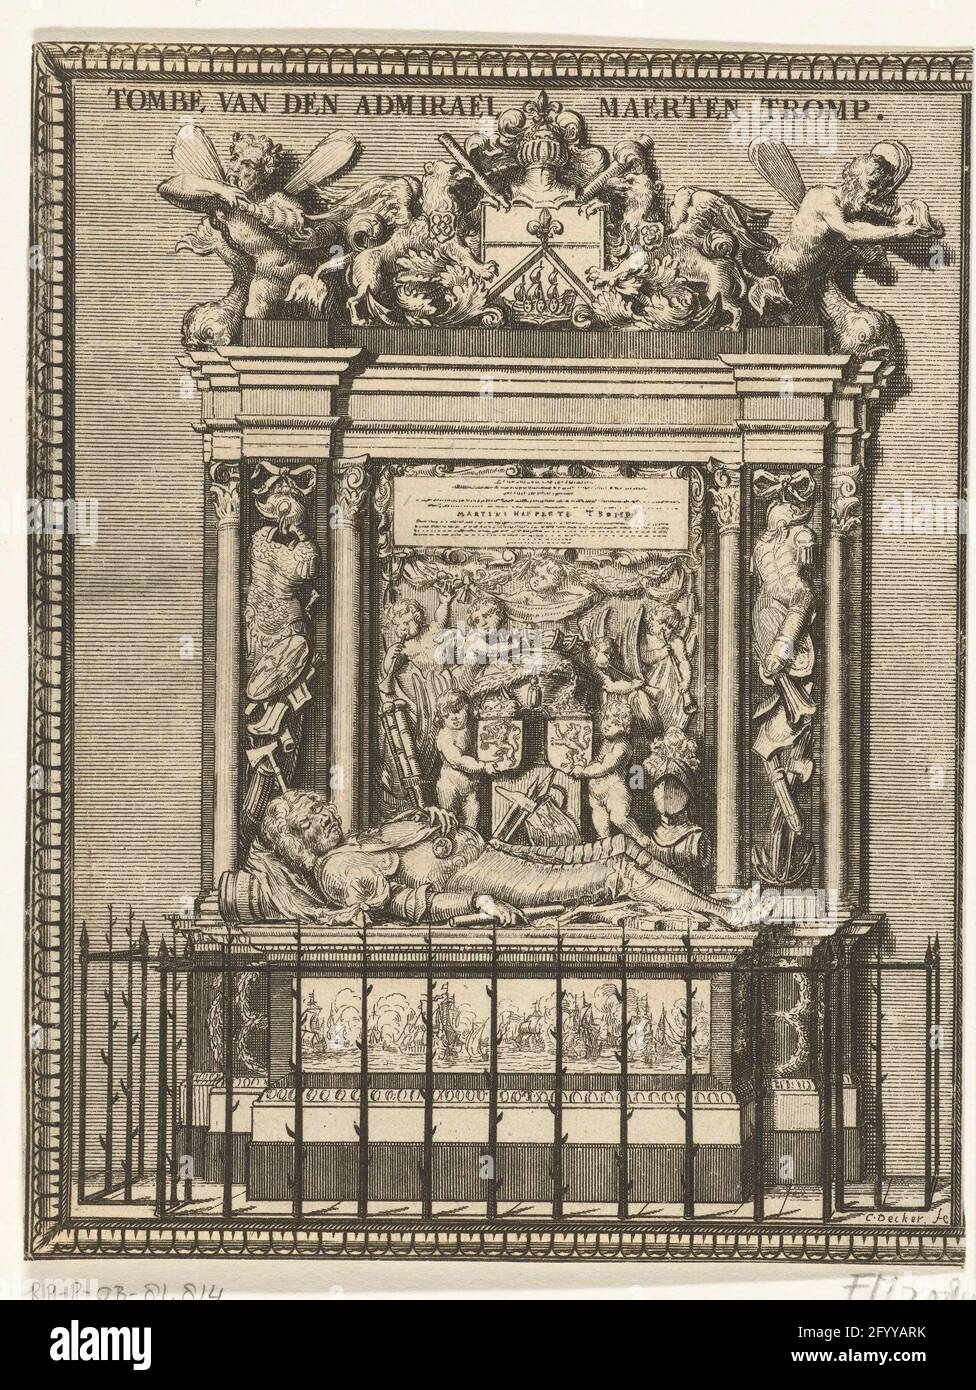 Tumba de praal del camarón de Maarten, 1653; Tambas de Tombe van den Admirael Maerten. Tumba de Pral del Almirante Maarten Tromp, muerto en la batalla naval en Terheide el 10 de agosto de 1653. La tumba de alabanza en el Oude Kerk en Delft terminó en 1656. Foto de stock